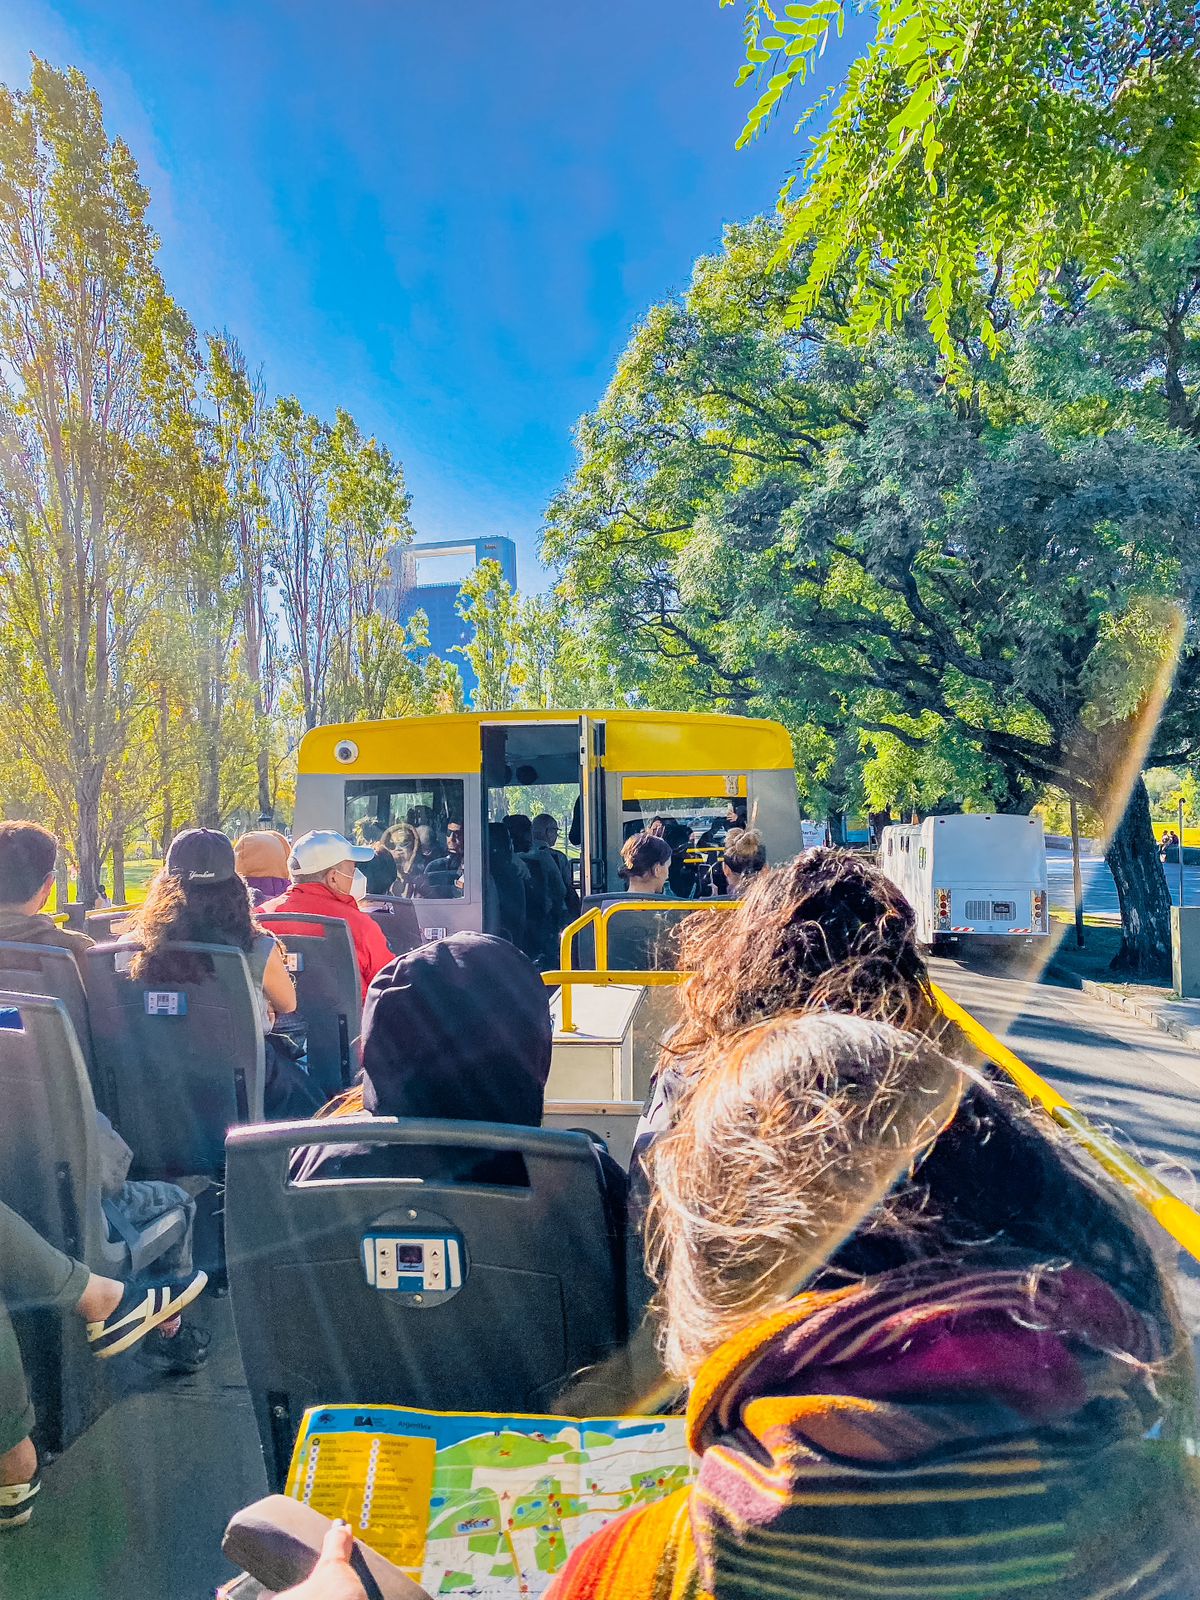 Buenos Aires Bus Amarelo